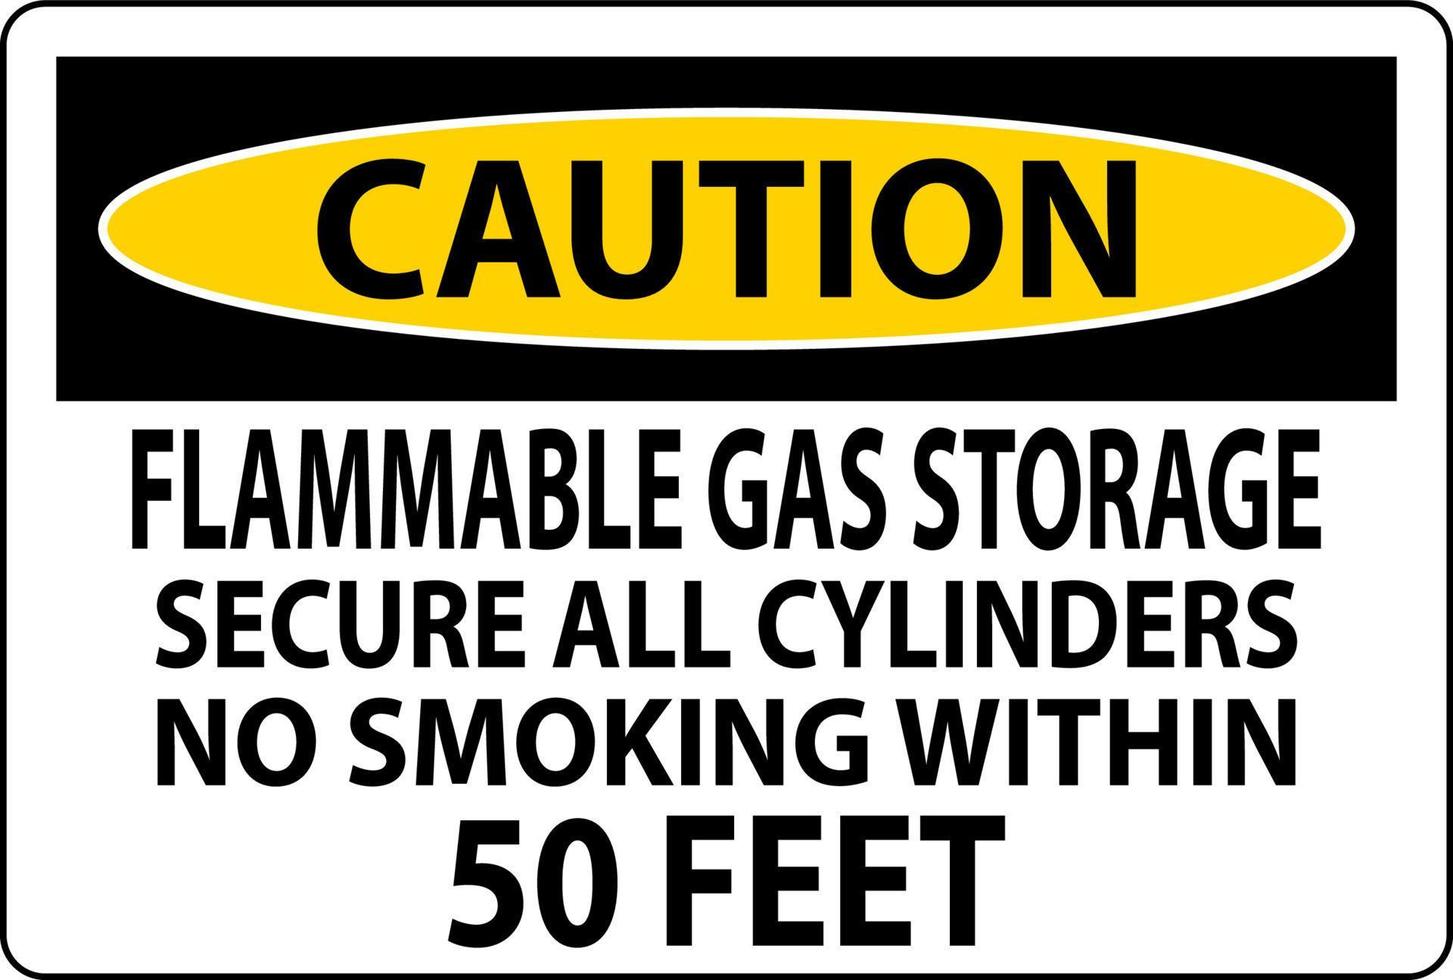 voorzichtigheid teken brandbaar gas- opslag, beveiligen allemaal cilinders, Nee roken binnen 50 voeten vector